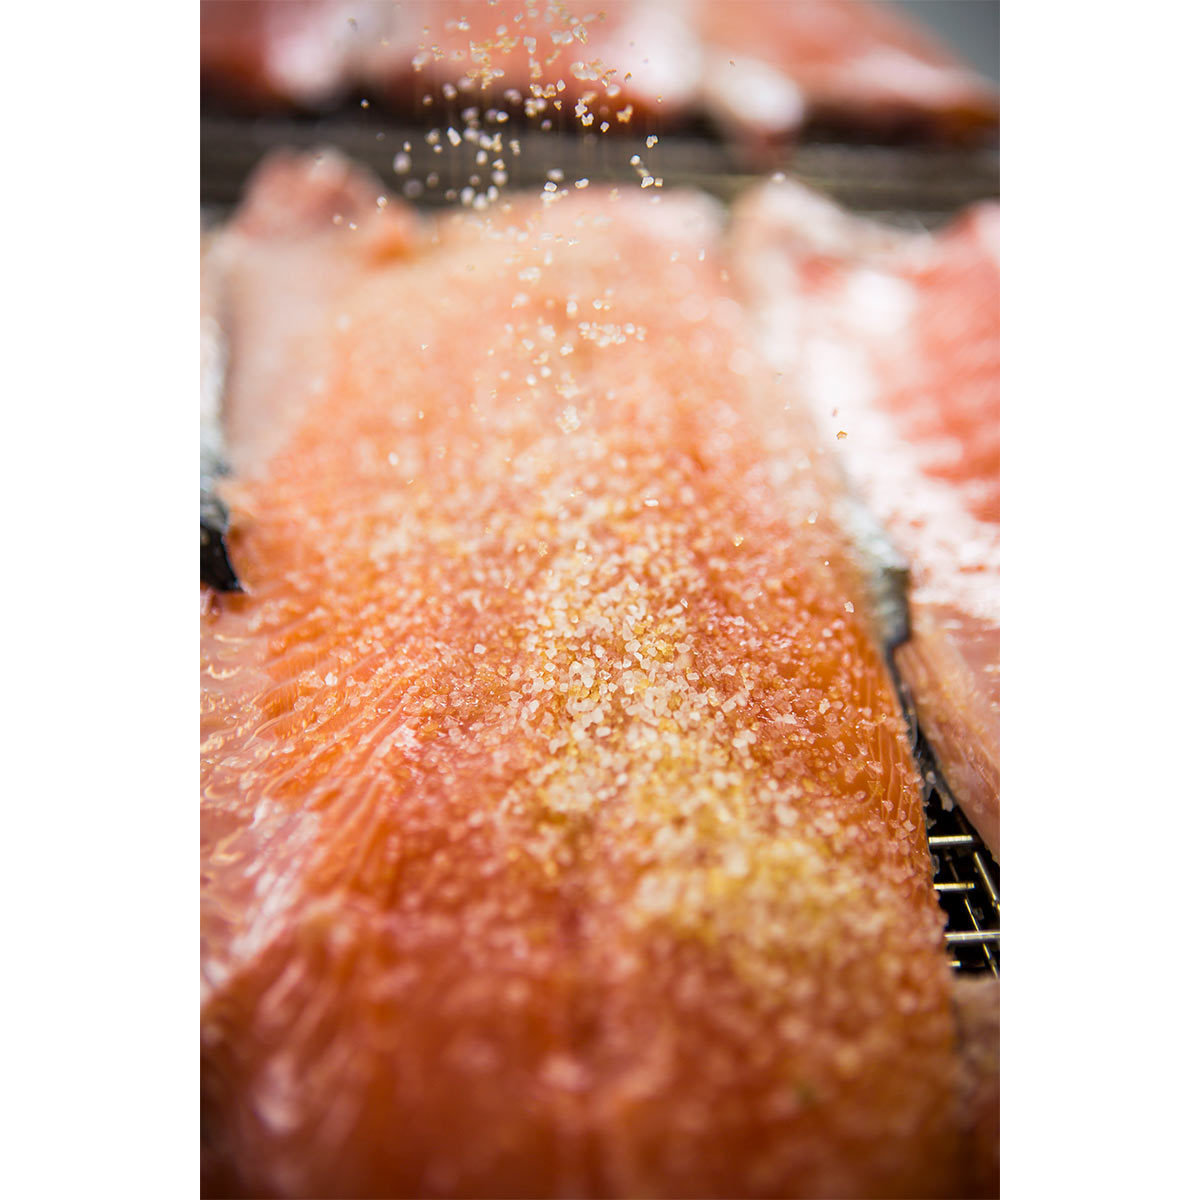 Loch Fyne Bradan Rost Fully Trimmed Kiln Roasted Salmon, 1kg (Serves 8-10 People)